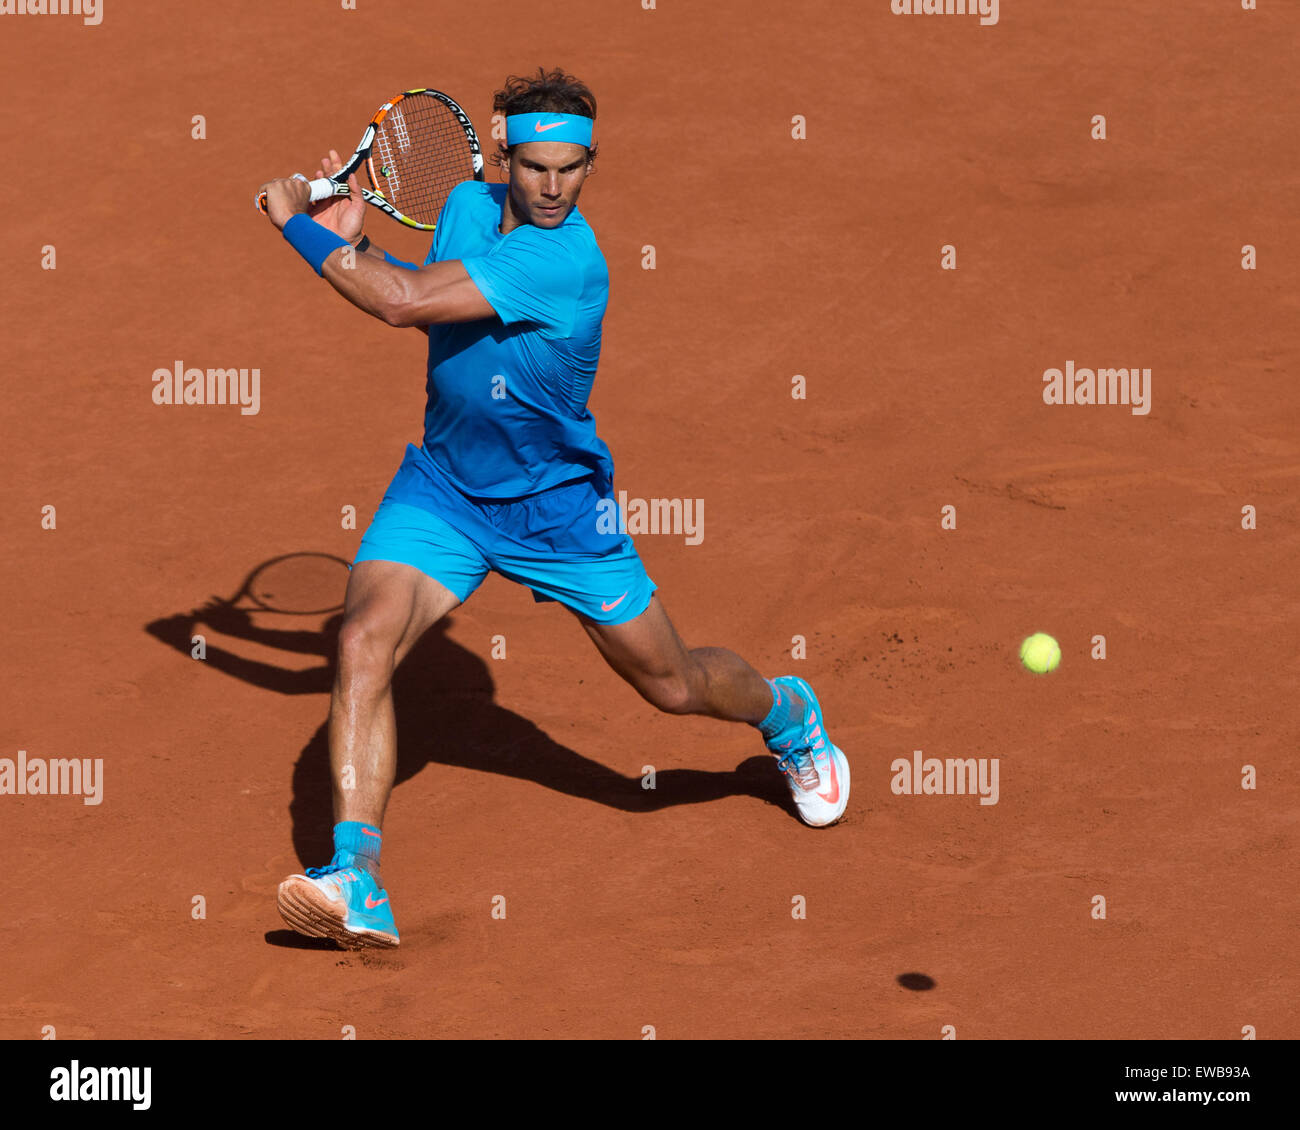 Rafael Nadal (ESP) en acción en el Abierto de Francia 2015 Foto de stock